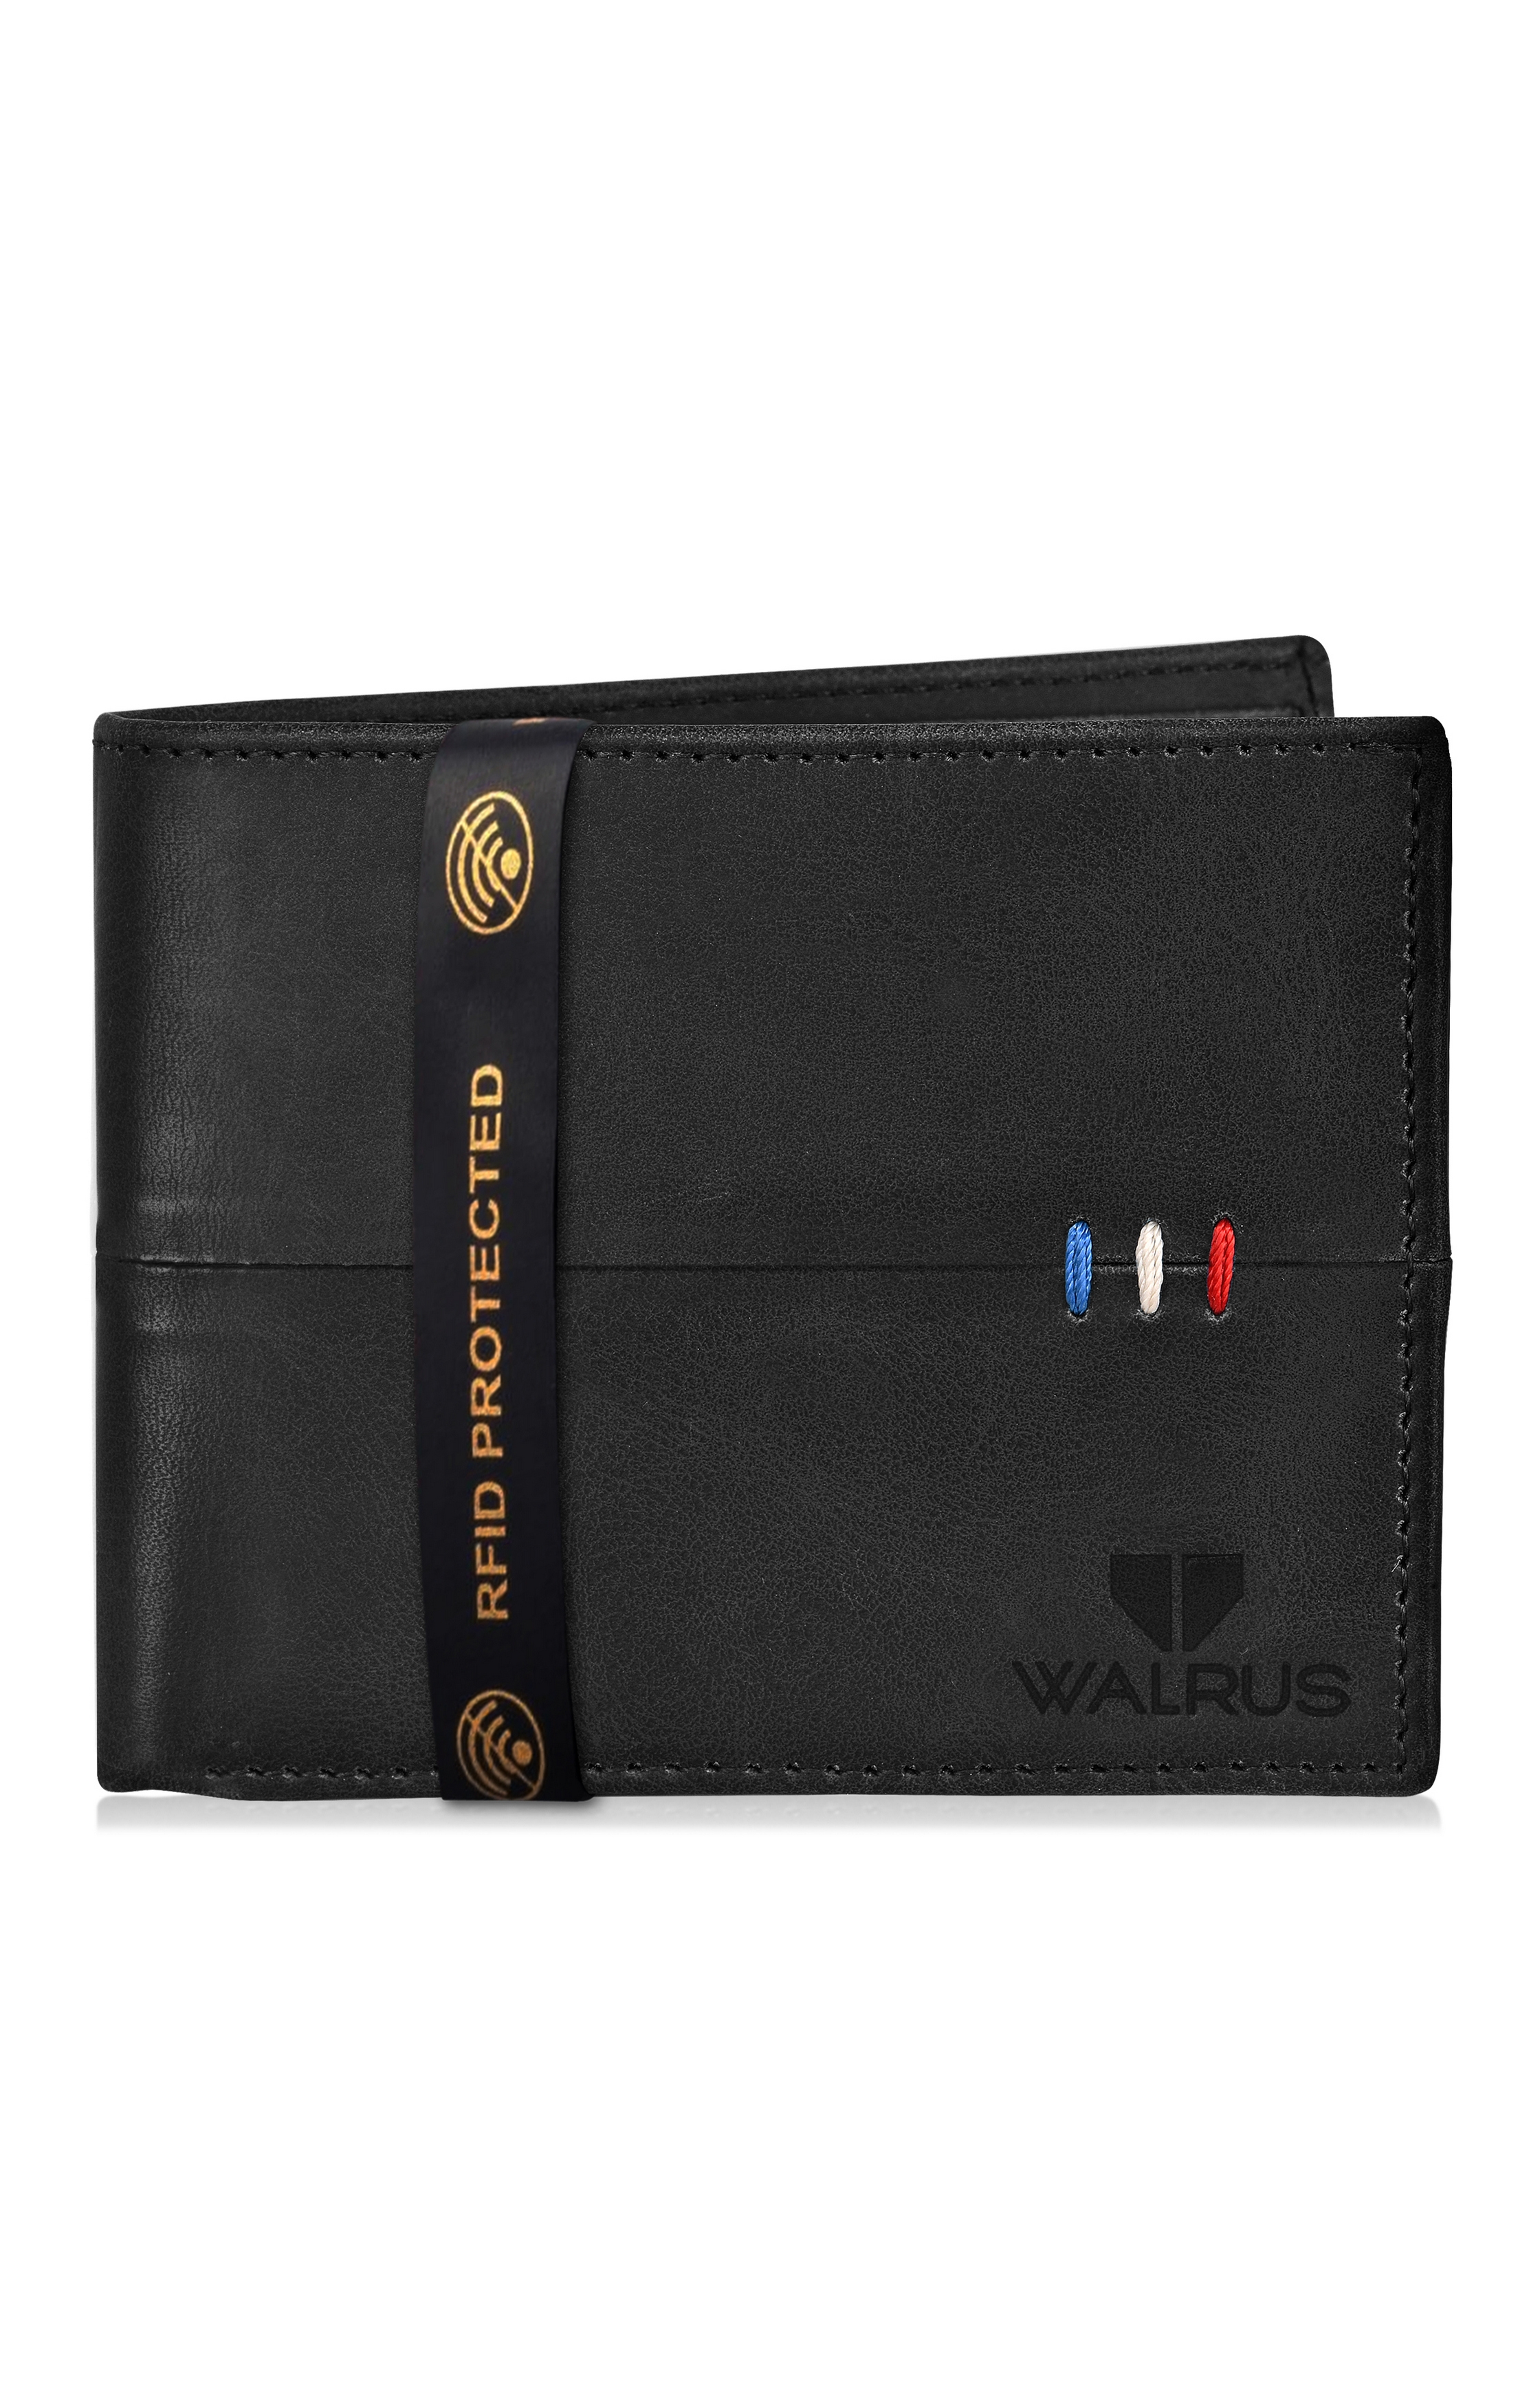 Walrus | Black Wallet 0